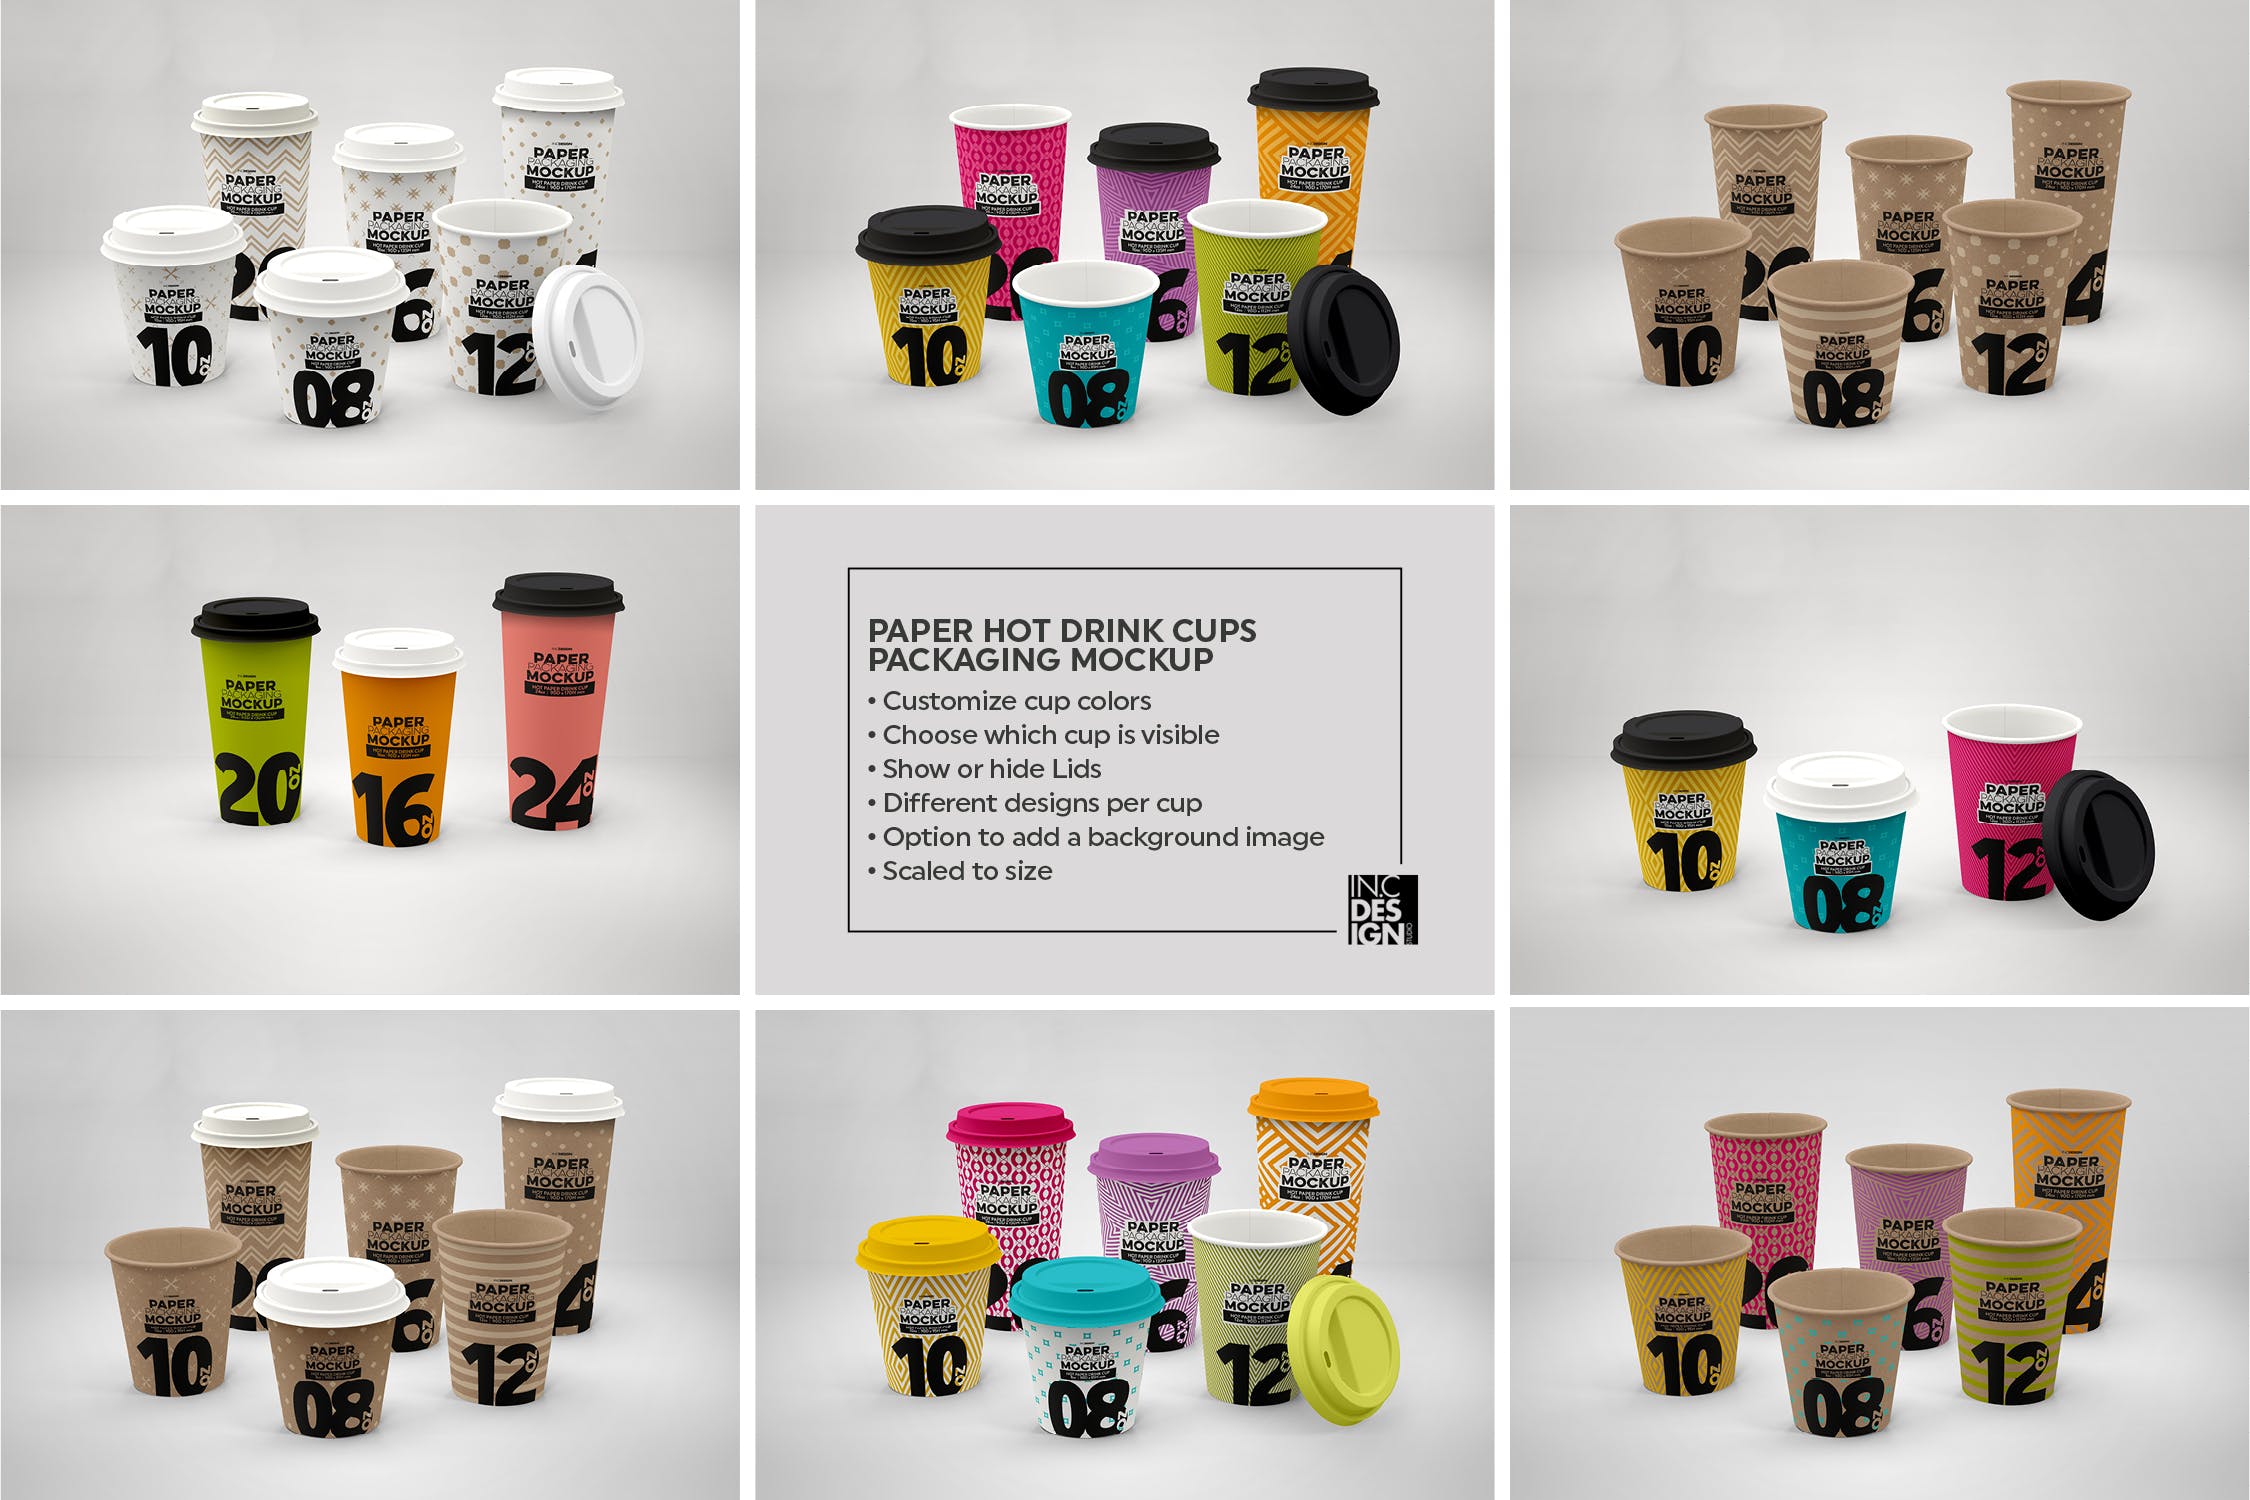 热饮一次性纸杯外观设计蚂蚁素材精选 Paper Hot Drink Cups Packaging Mockup插图(3)